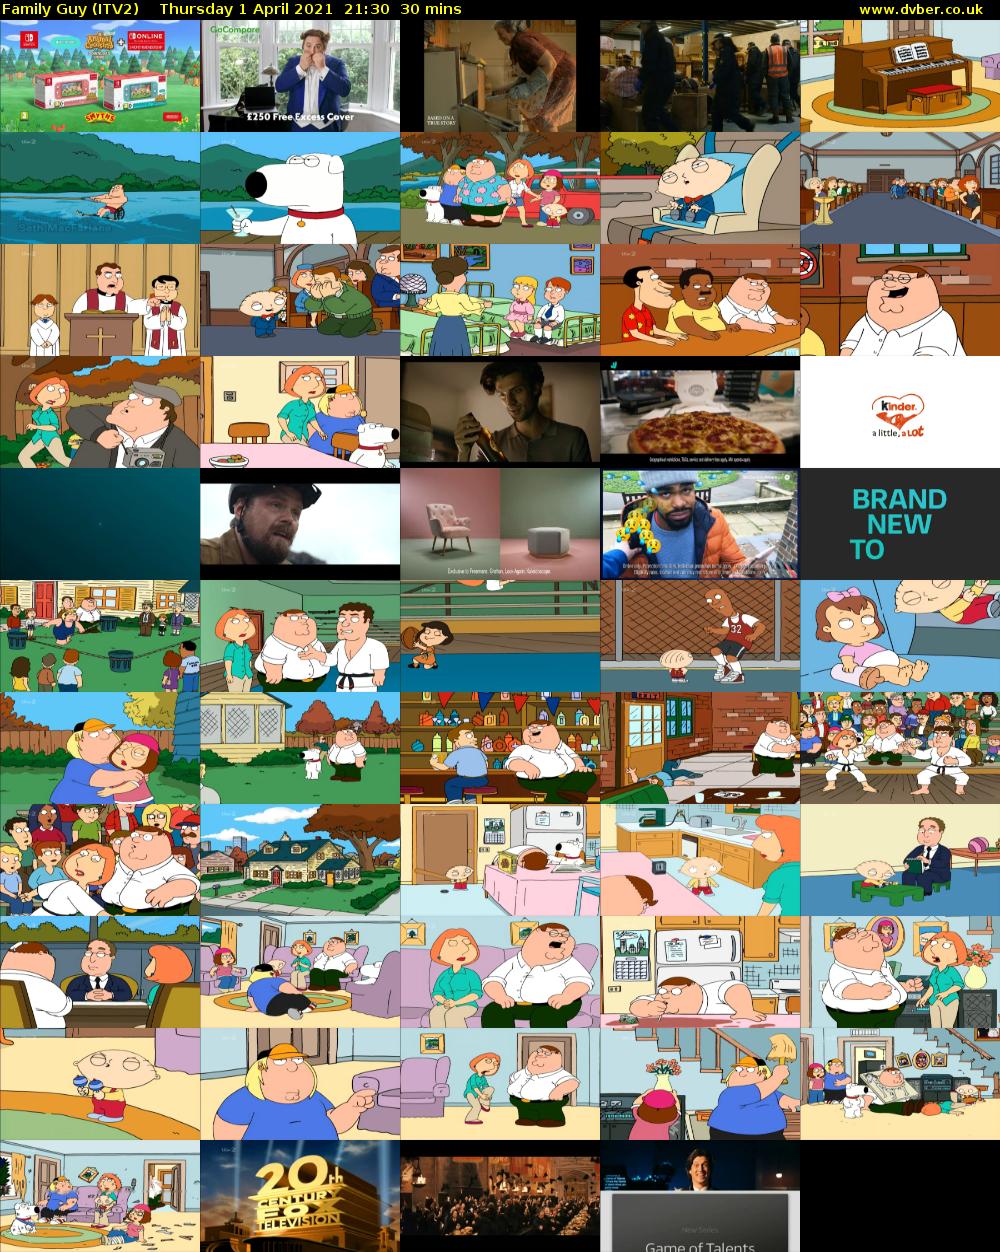 Family Guy (ITV2) Thursday 1 April 2021 21:30 - 22:00